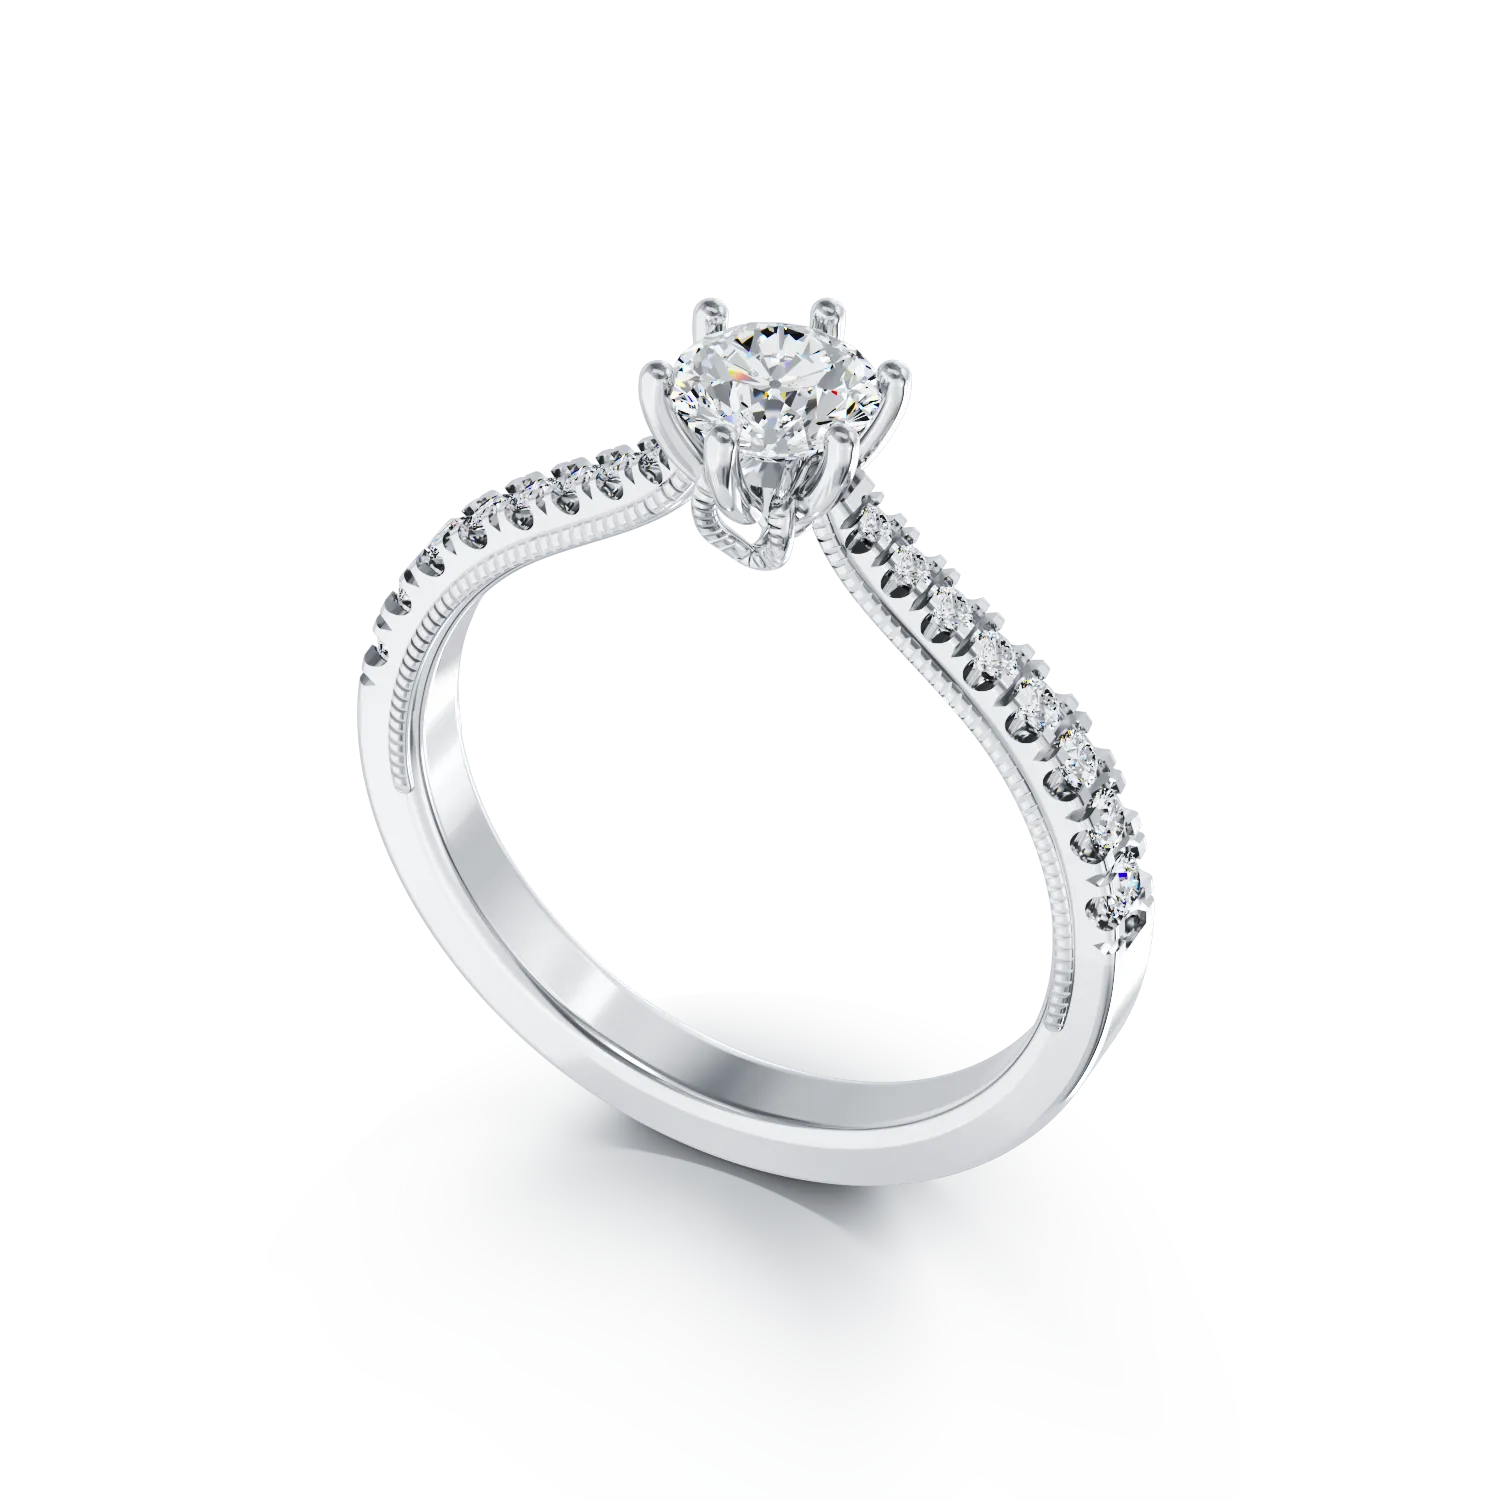 Eljegyzési gyűrű 18K-os fehér aranyból 0,16ct gyémánttal és 0,17ct gyémánttal. Gramm: 2,31